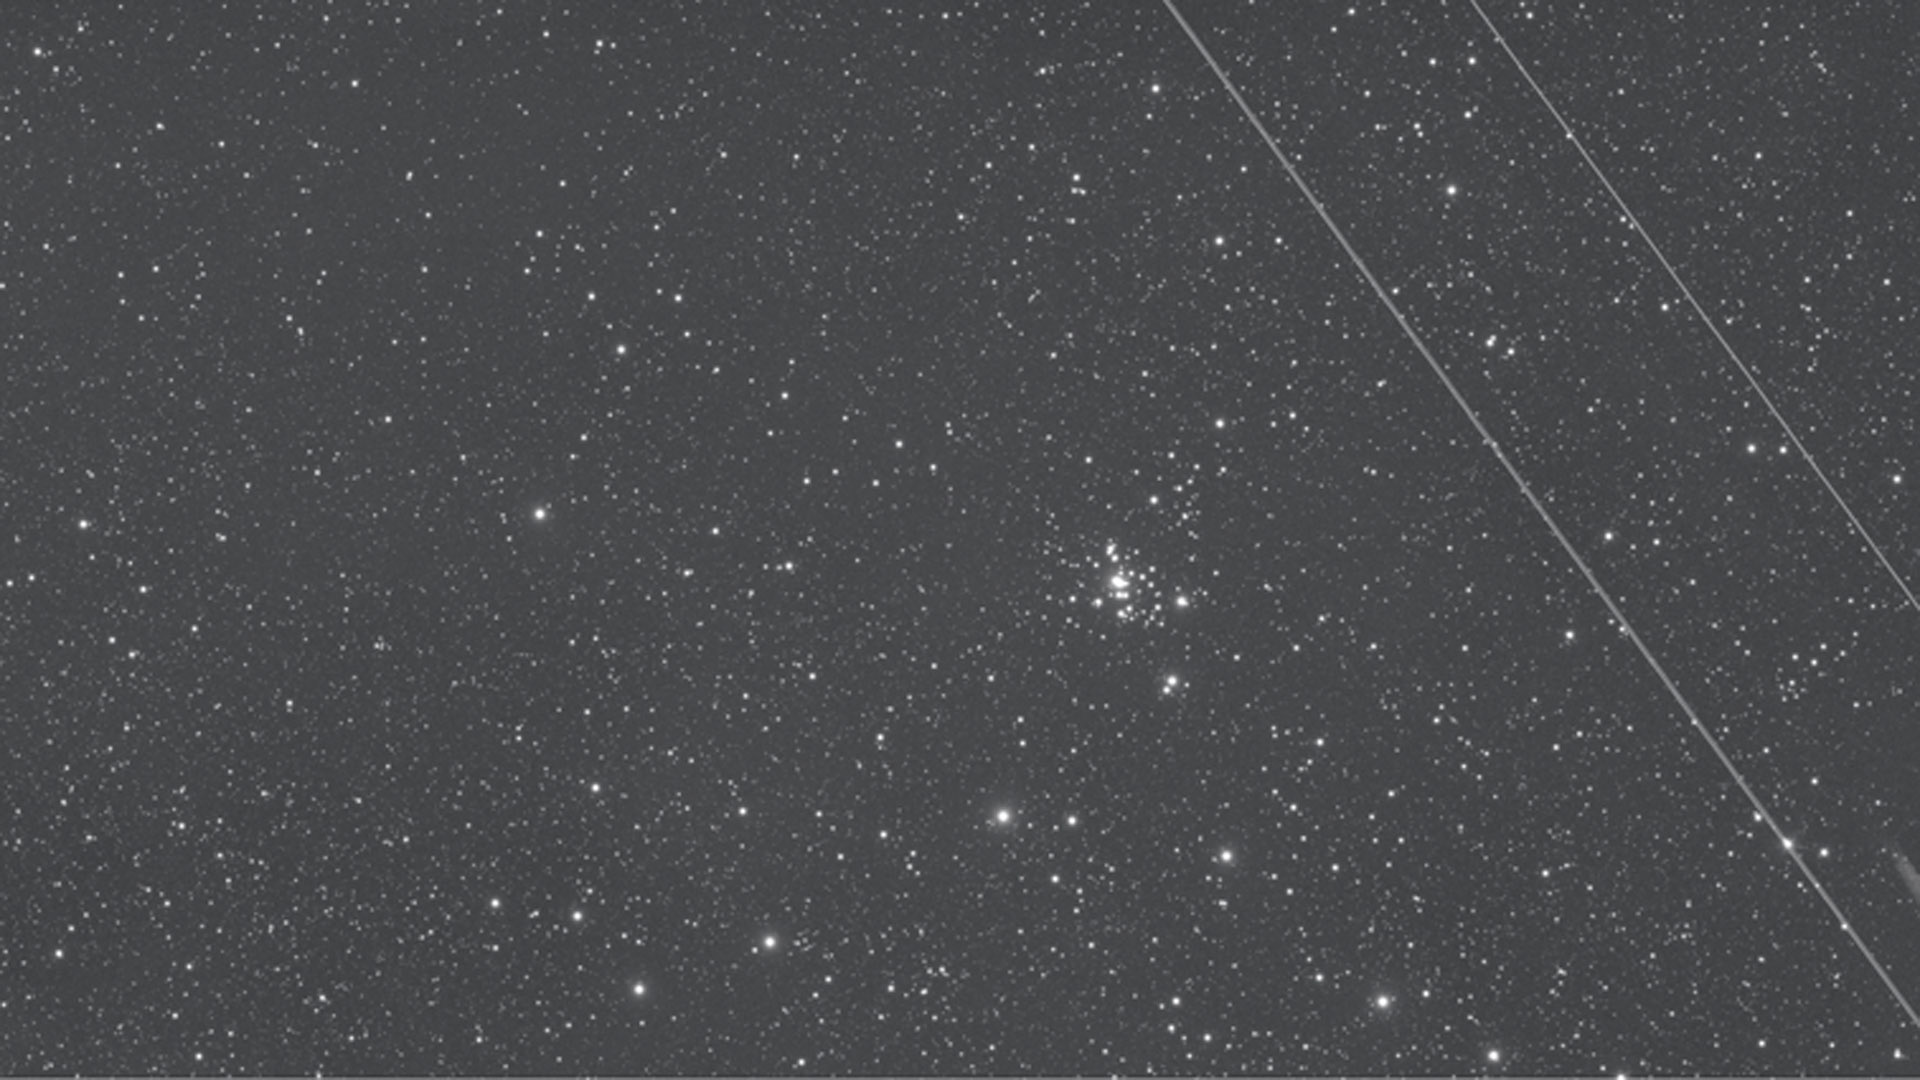 Wie ärgerlich! Ein Flugzeug bewegte
sich während dieser 15 Minuten langen
Aufnahme von NGC 1501 durch das Bildfeld.
Ist das Bild noch verwendbar? M.Weigand